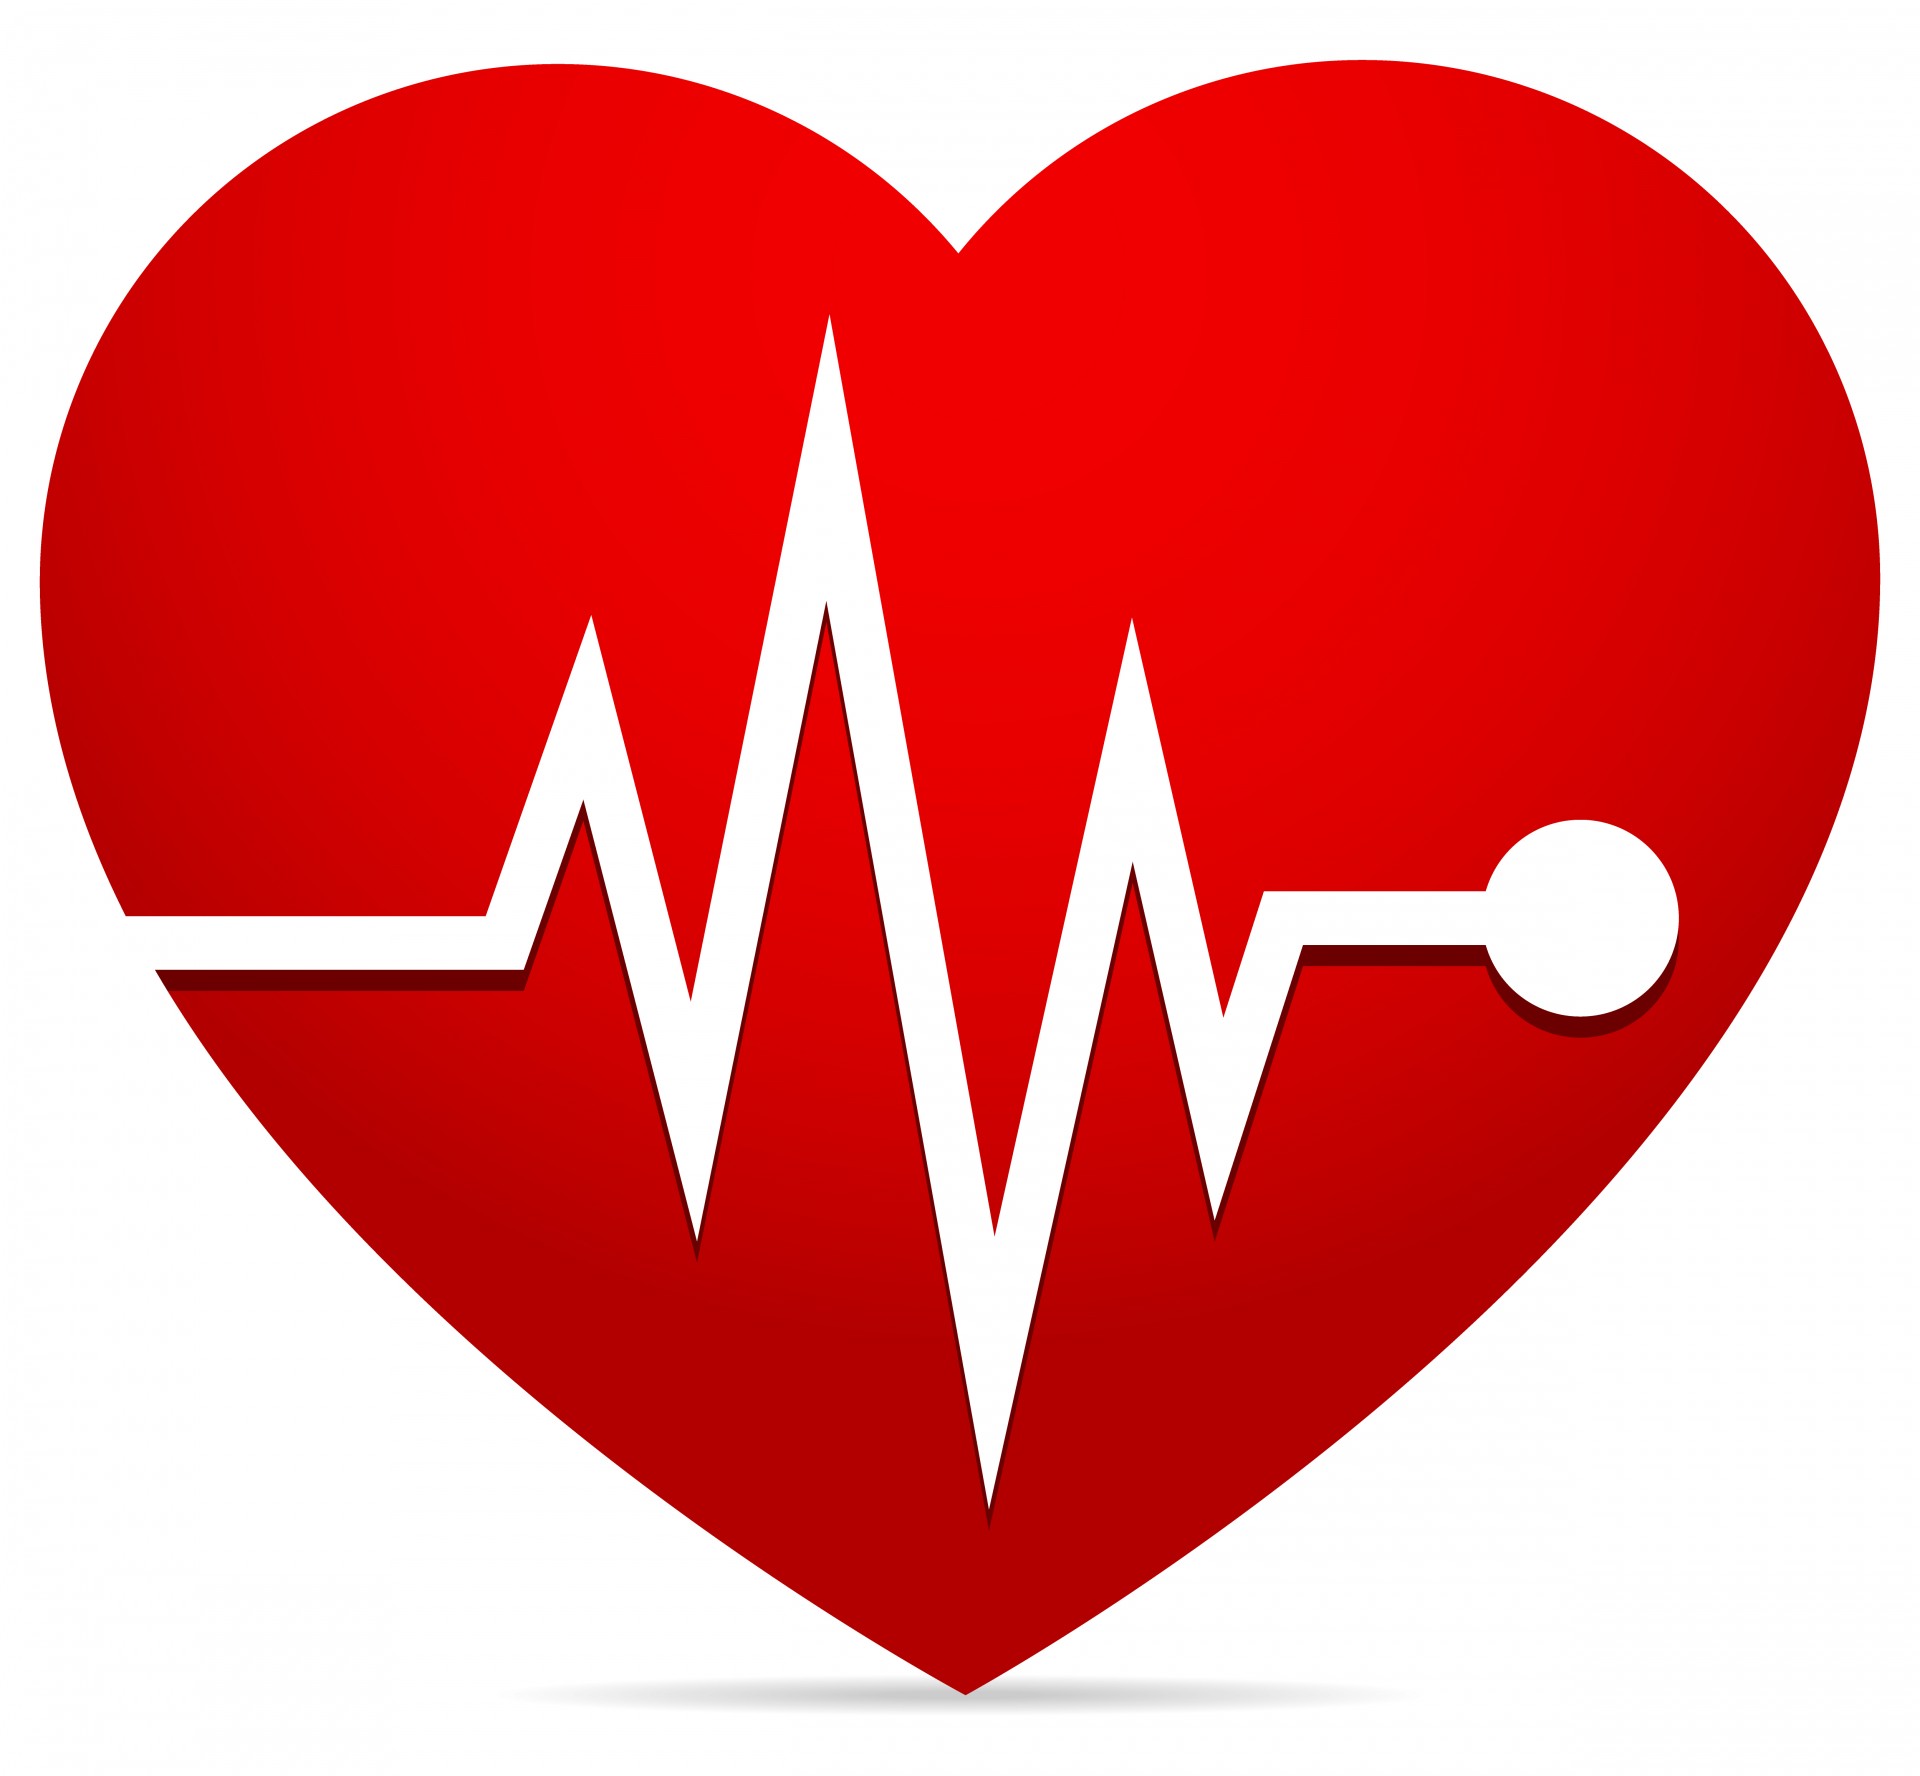 Srdečního tepu, EKG (EKG), bušení srdce